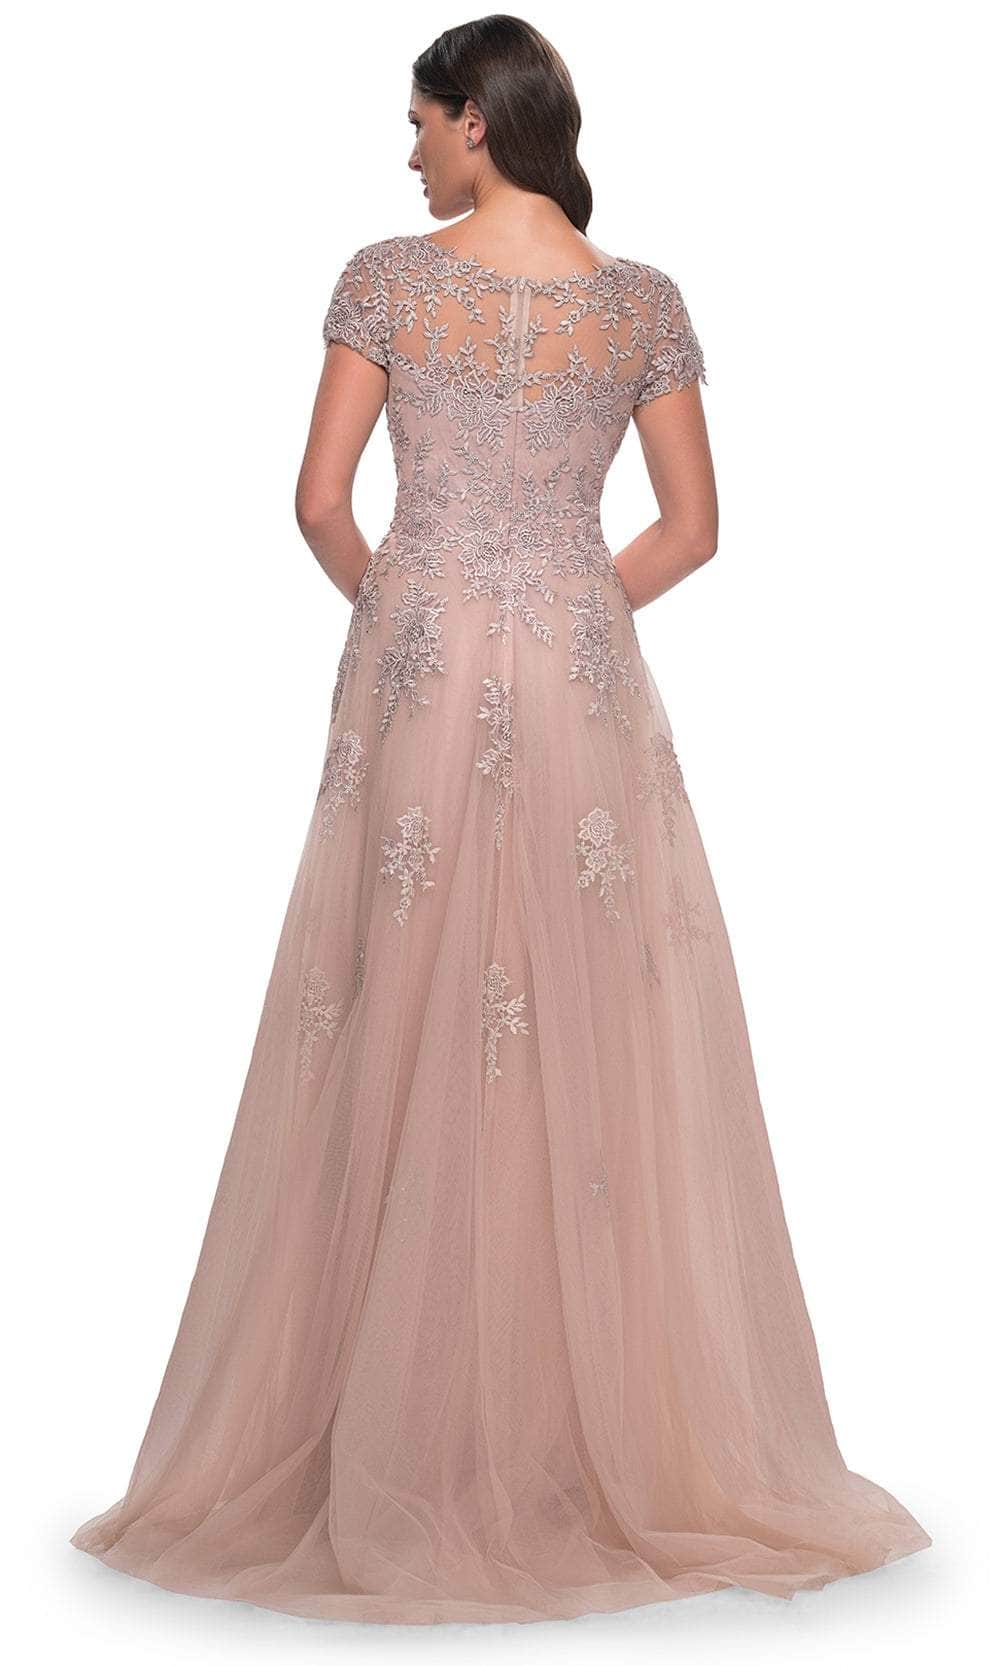 La Femme 30228 - Embroidered A-Line Formal Dress Evening Dresses